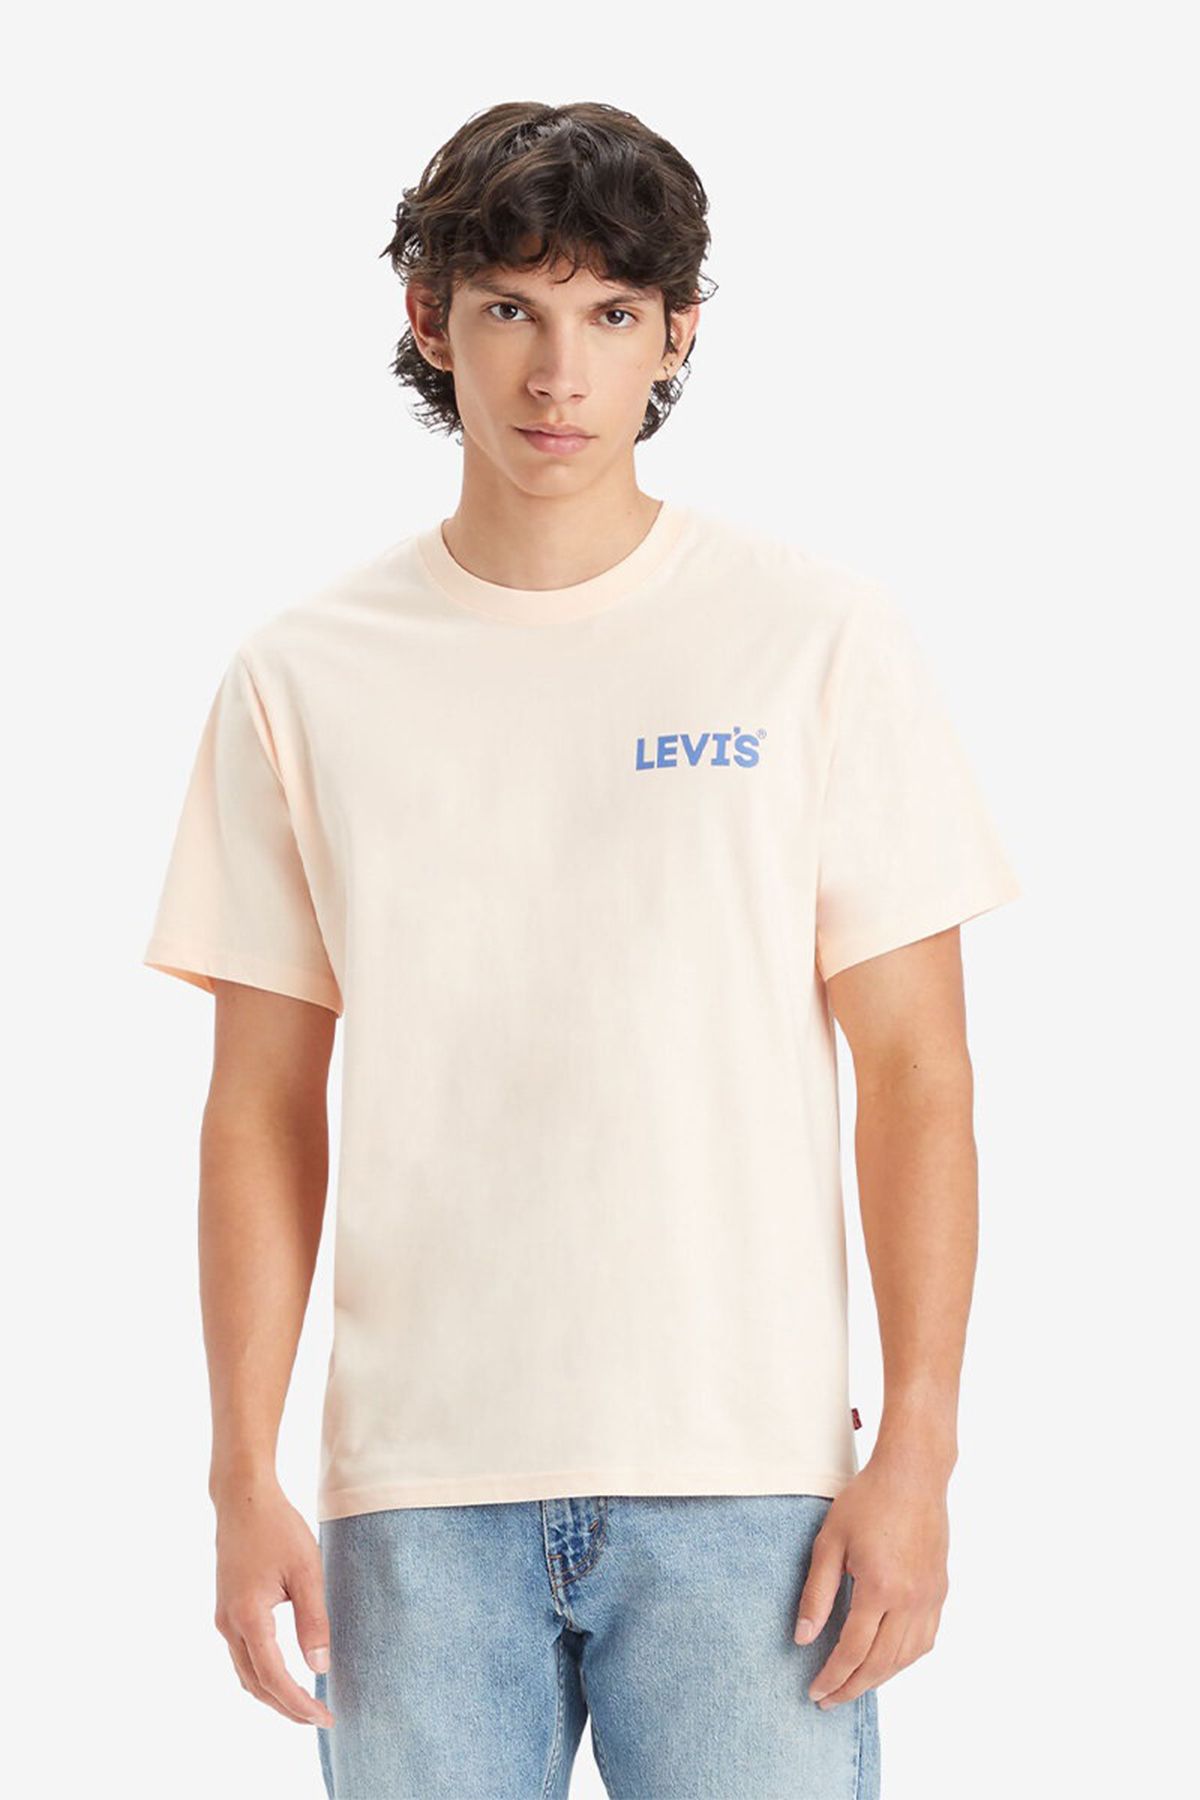 Levi's Pamuklu Relaxed Fit T Shirt Erkek T SHİRT A2082